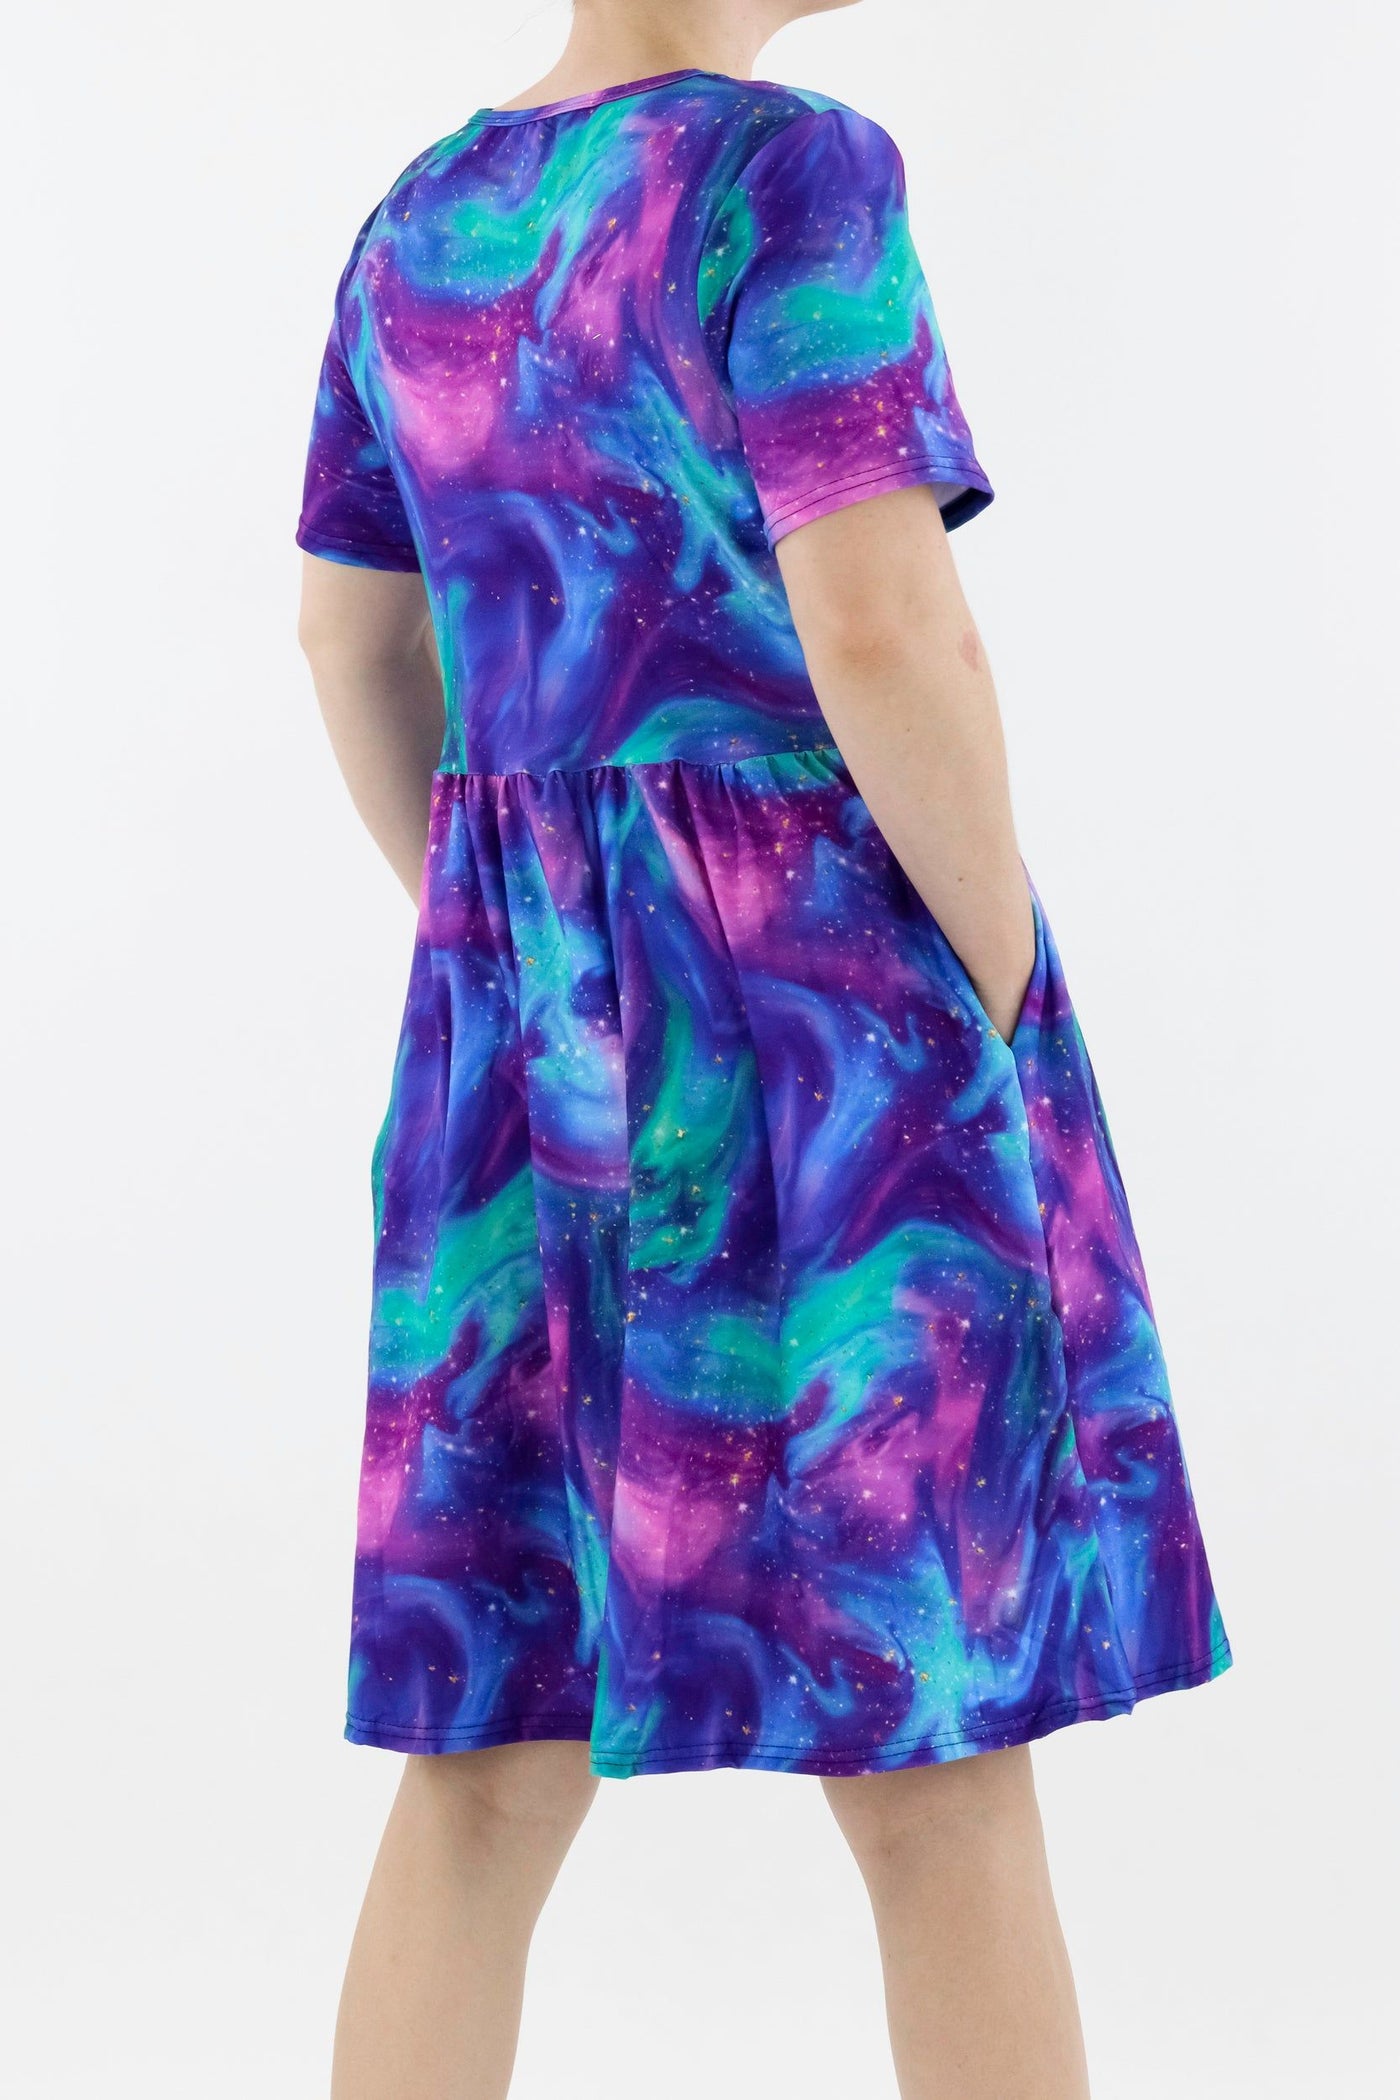 Aurora Sky - Short Sleeve Skater Dress - Knee Length - Side Pockets Knee Length Skater Dress Pawlie   